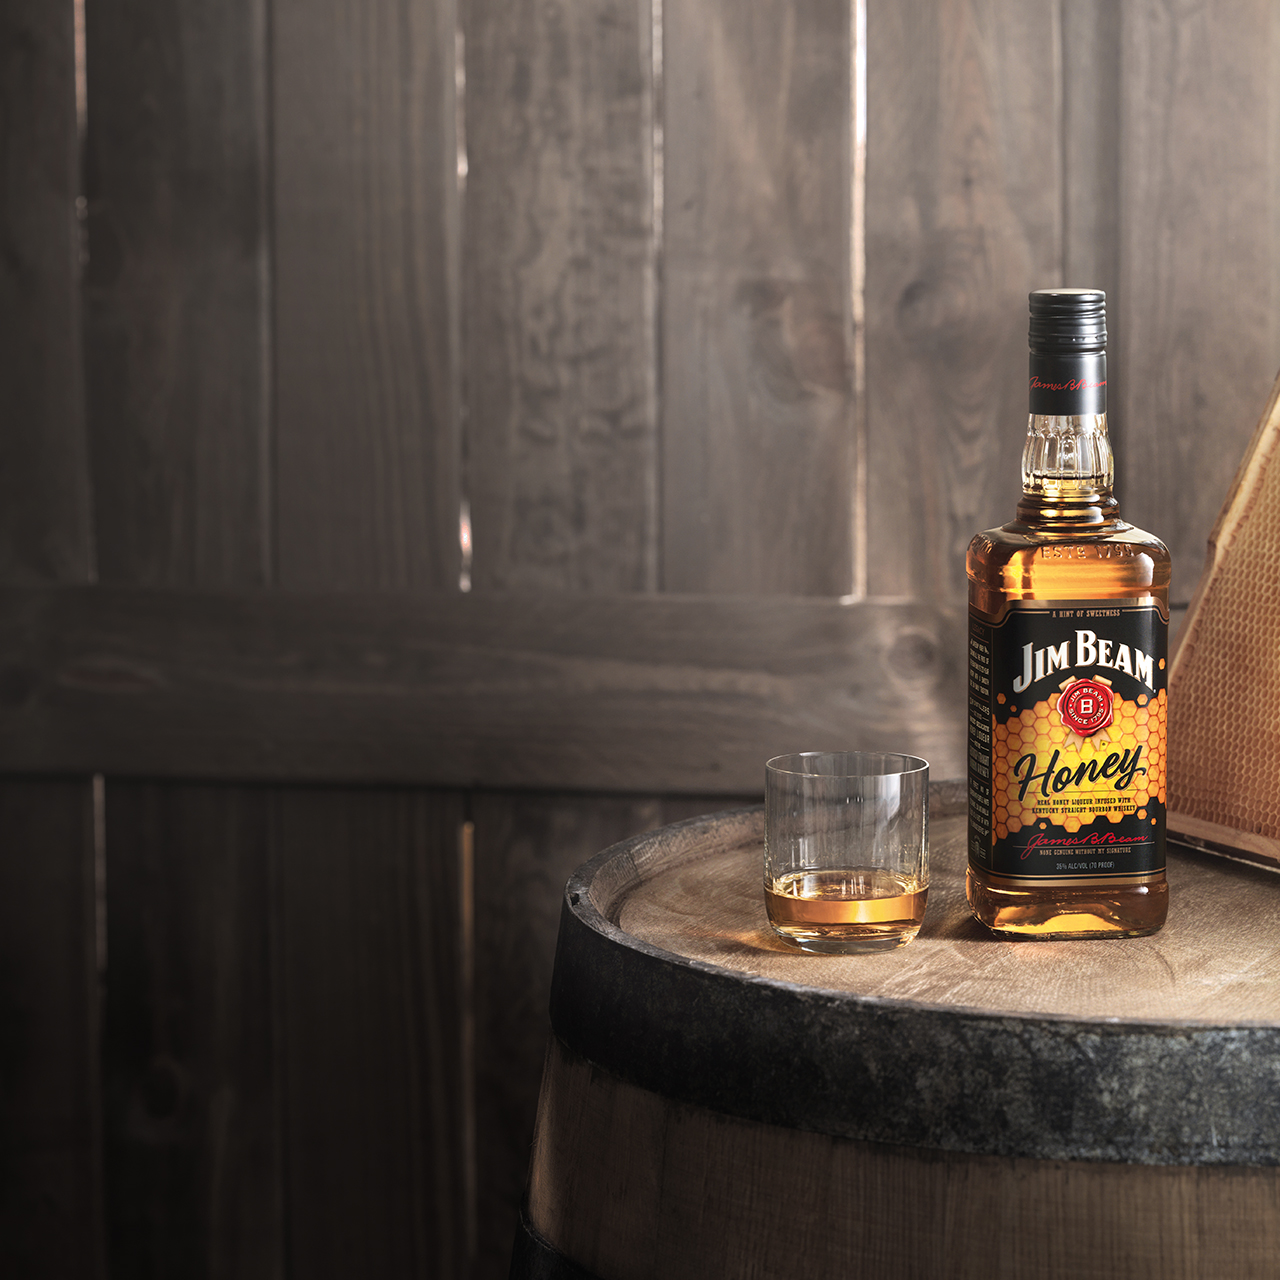 Uma garrafa de Jim Beam® Honey rodeada por barris de bourbon do Kentucky armazenados.